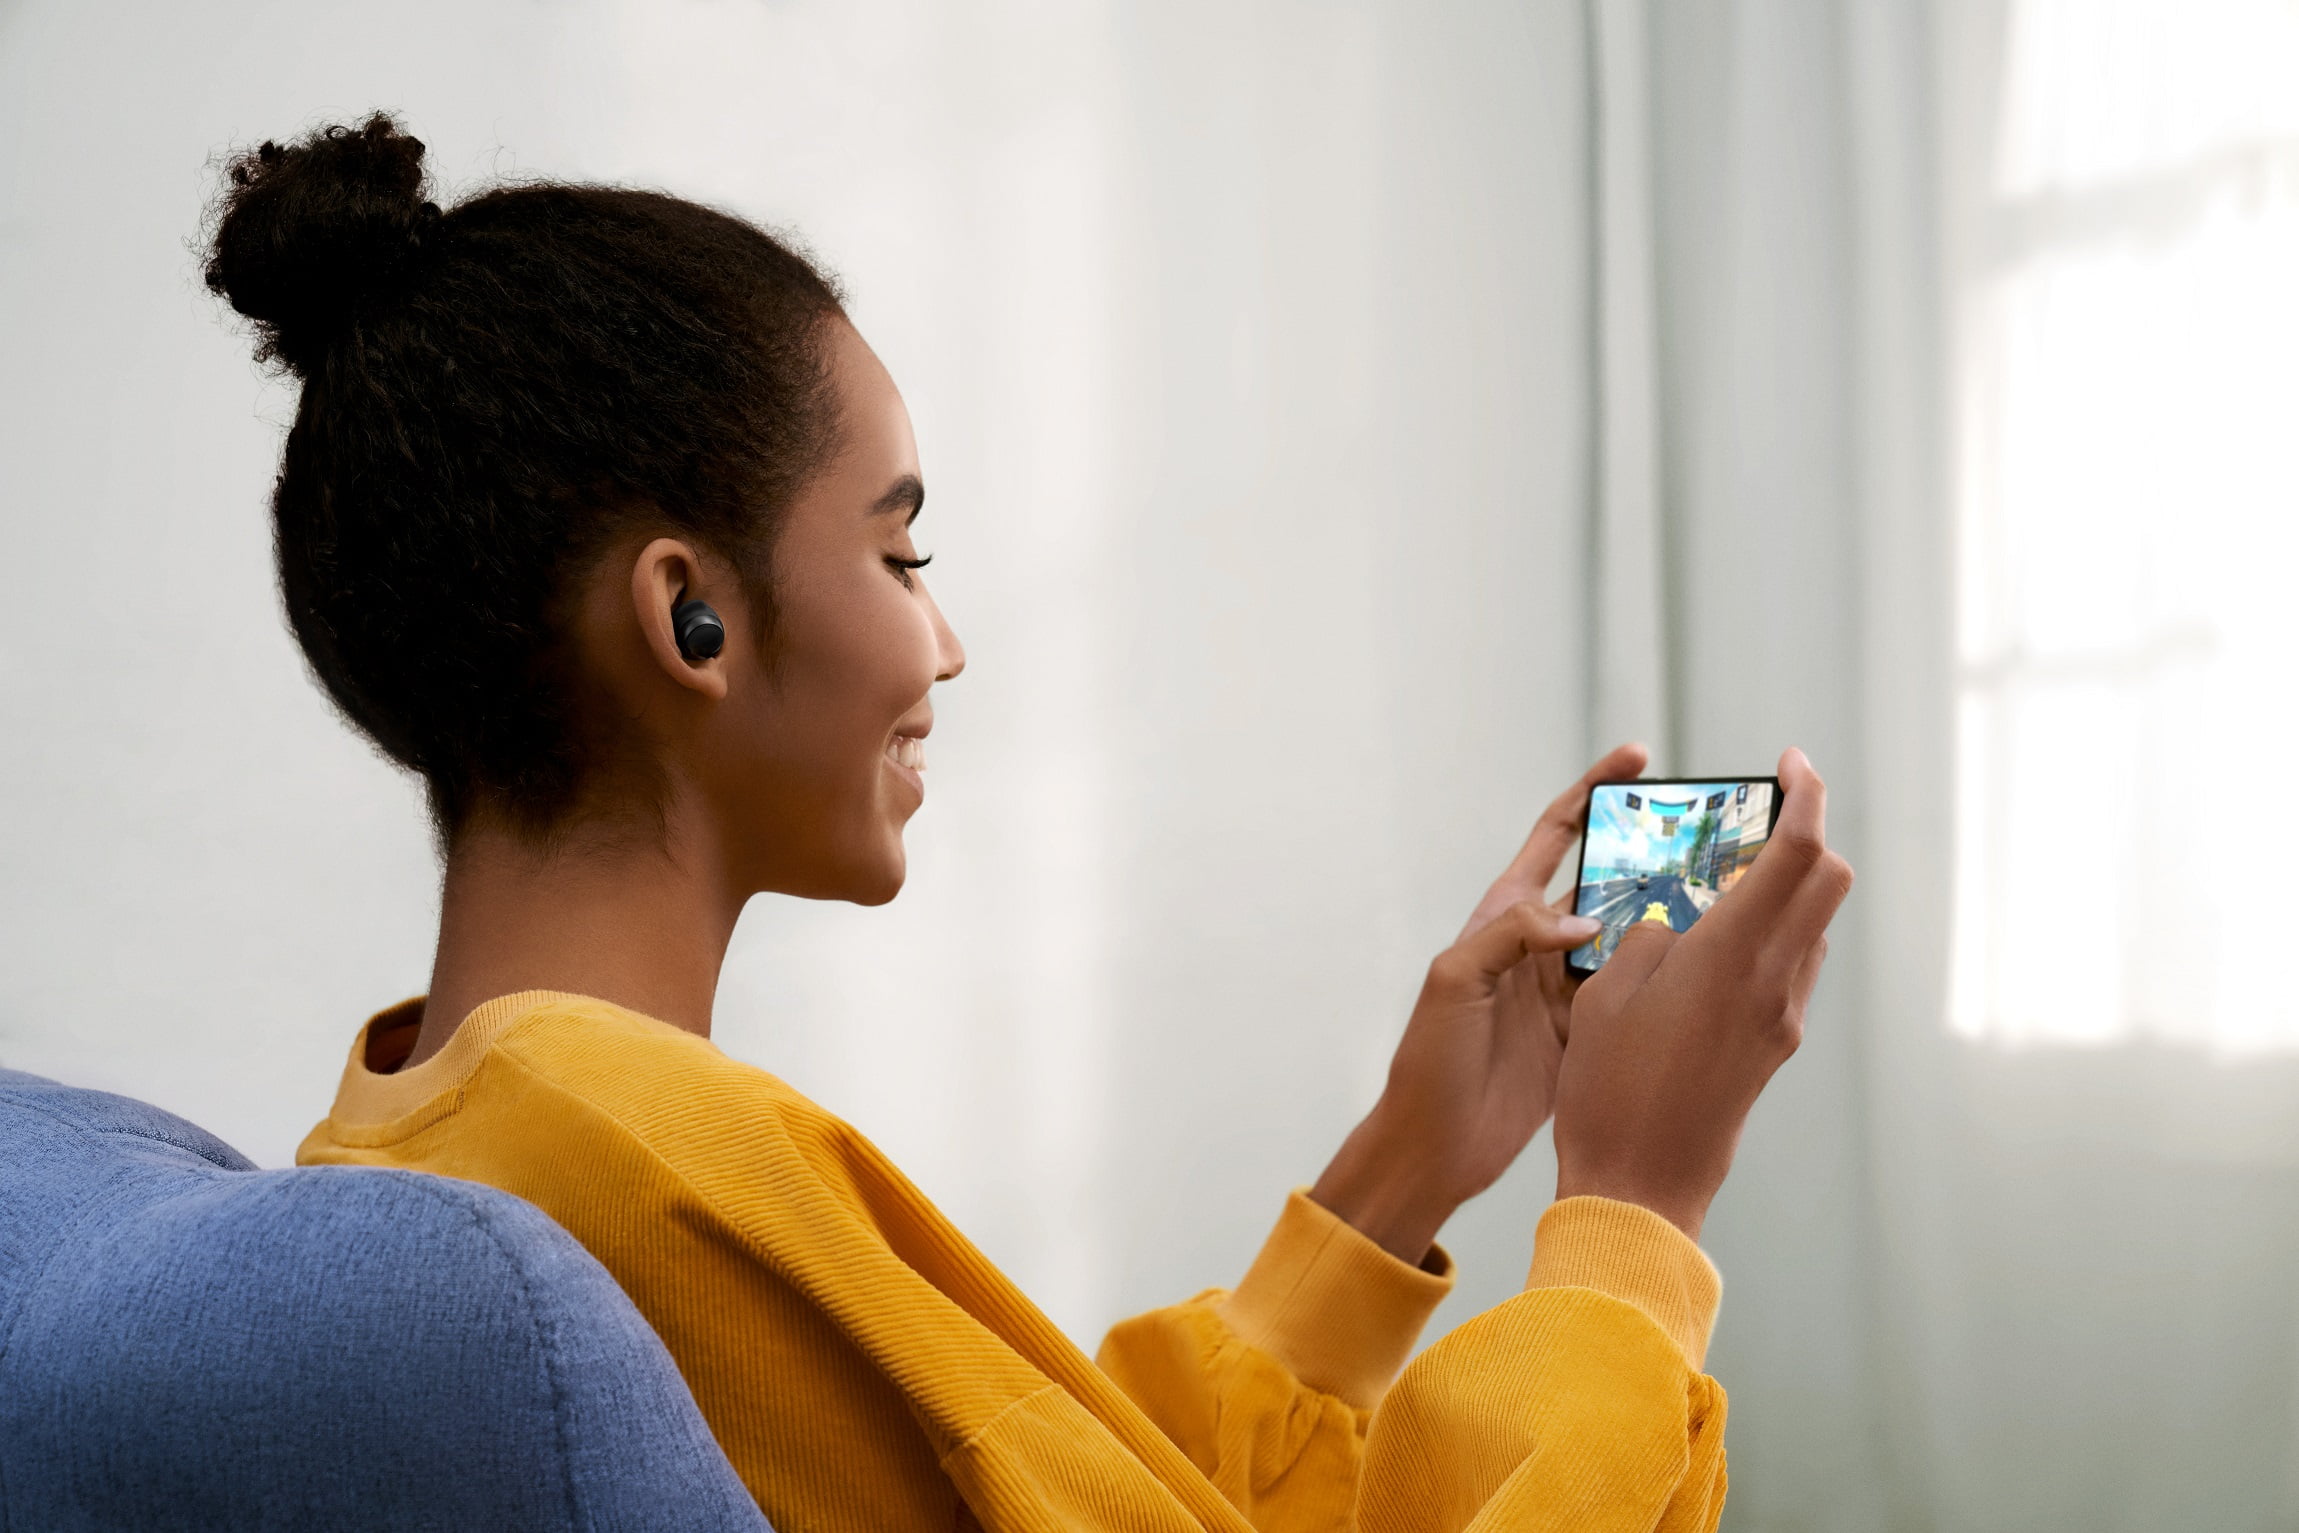 Xiaomi: ¿Es la primera vez que compras audífonos inalámbricos?